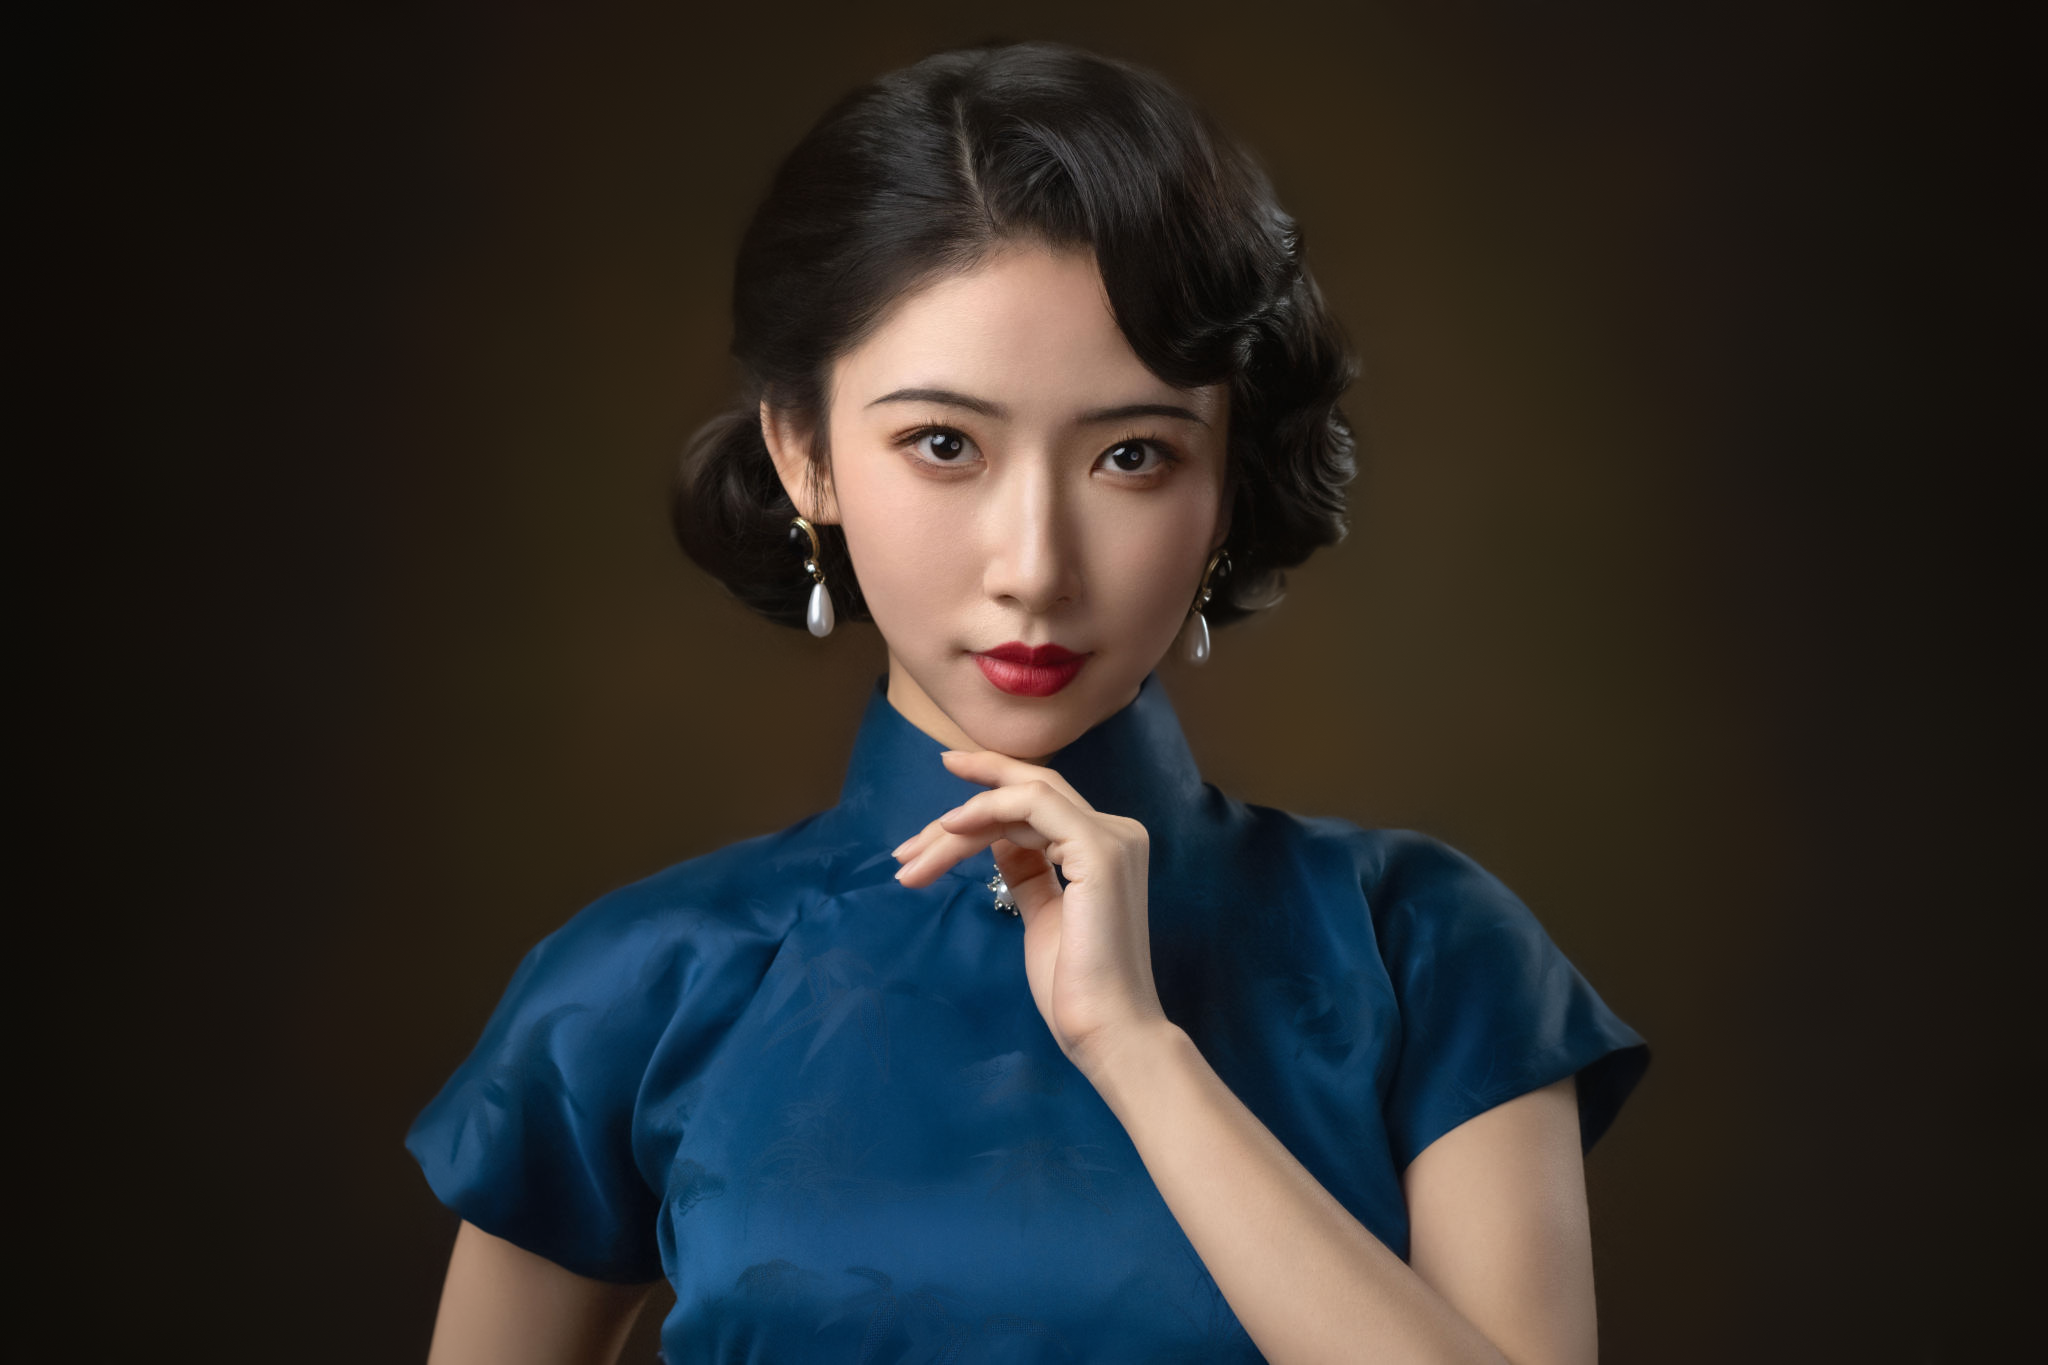 People 2048x1365 Lee Hu women Asian earring lipstick portrait